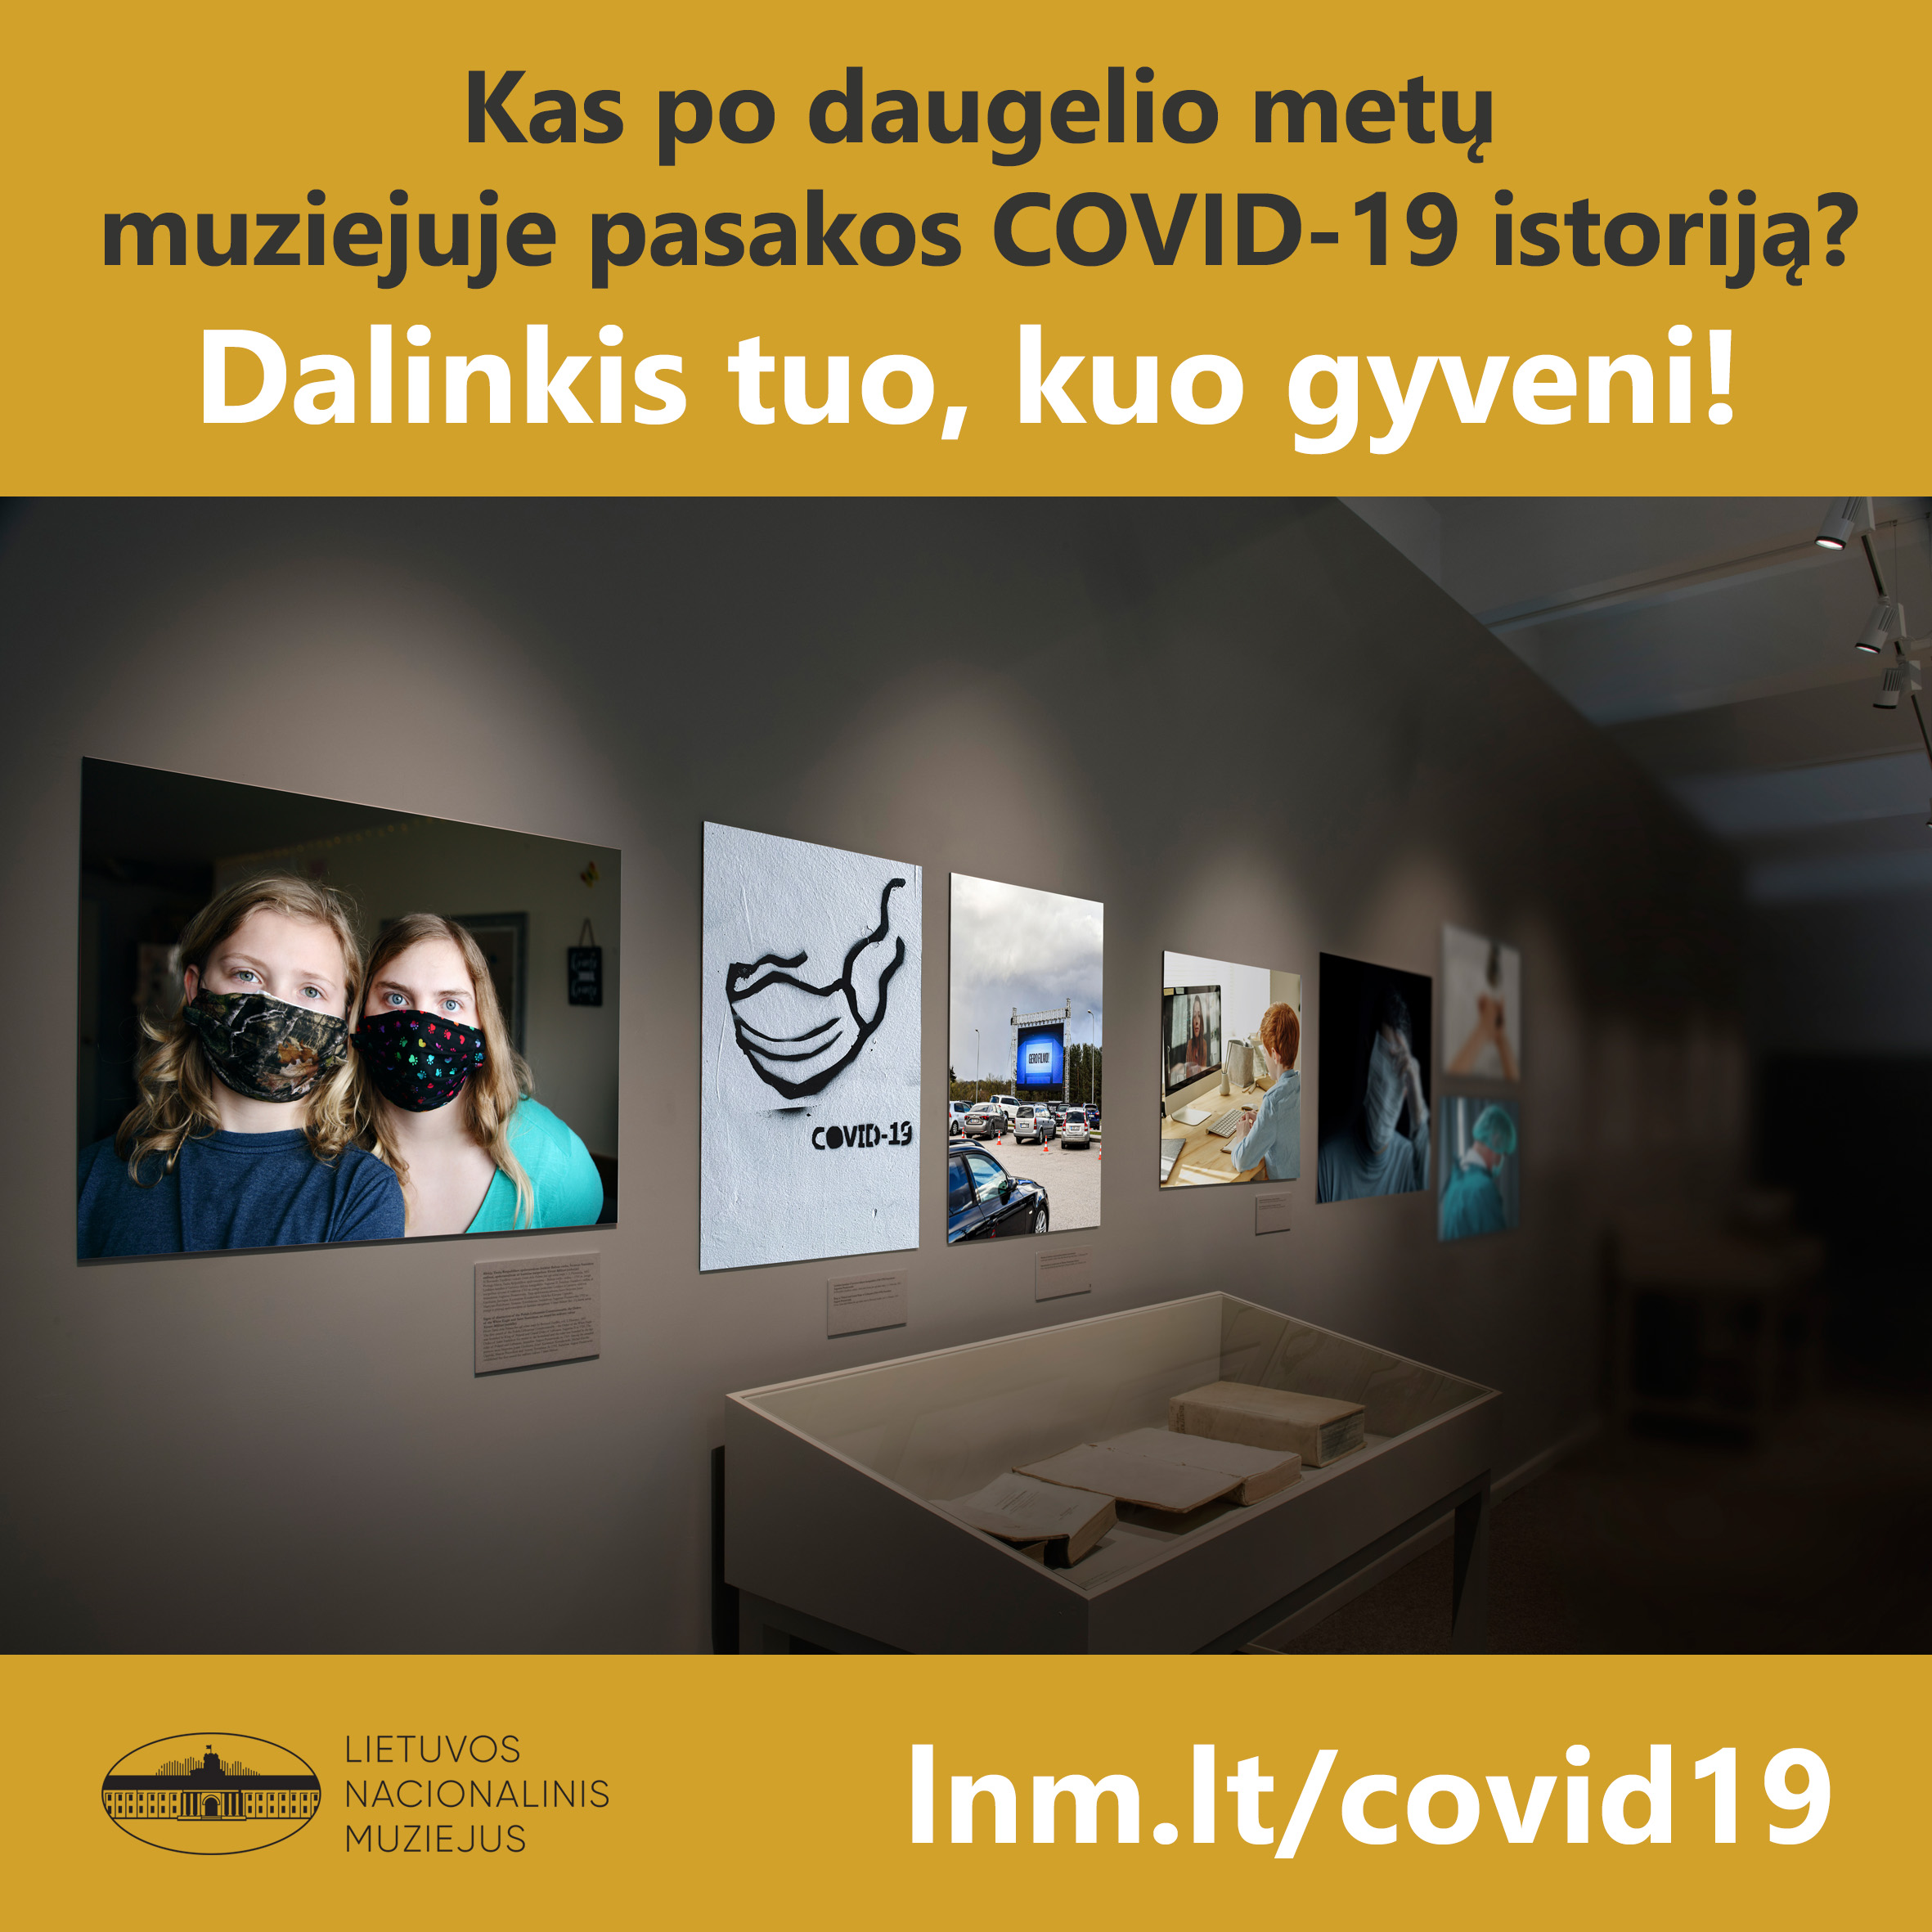 Lietuvos nacionalinis muziejus kviečia dalintis daiktais, kurie po daugelio metų pasakos COVID-19 istoriją